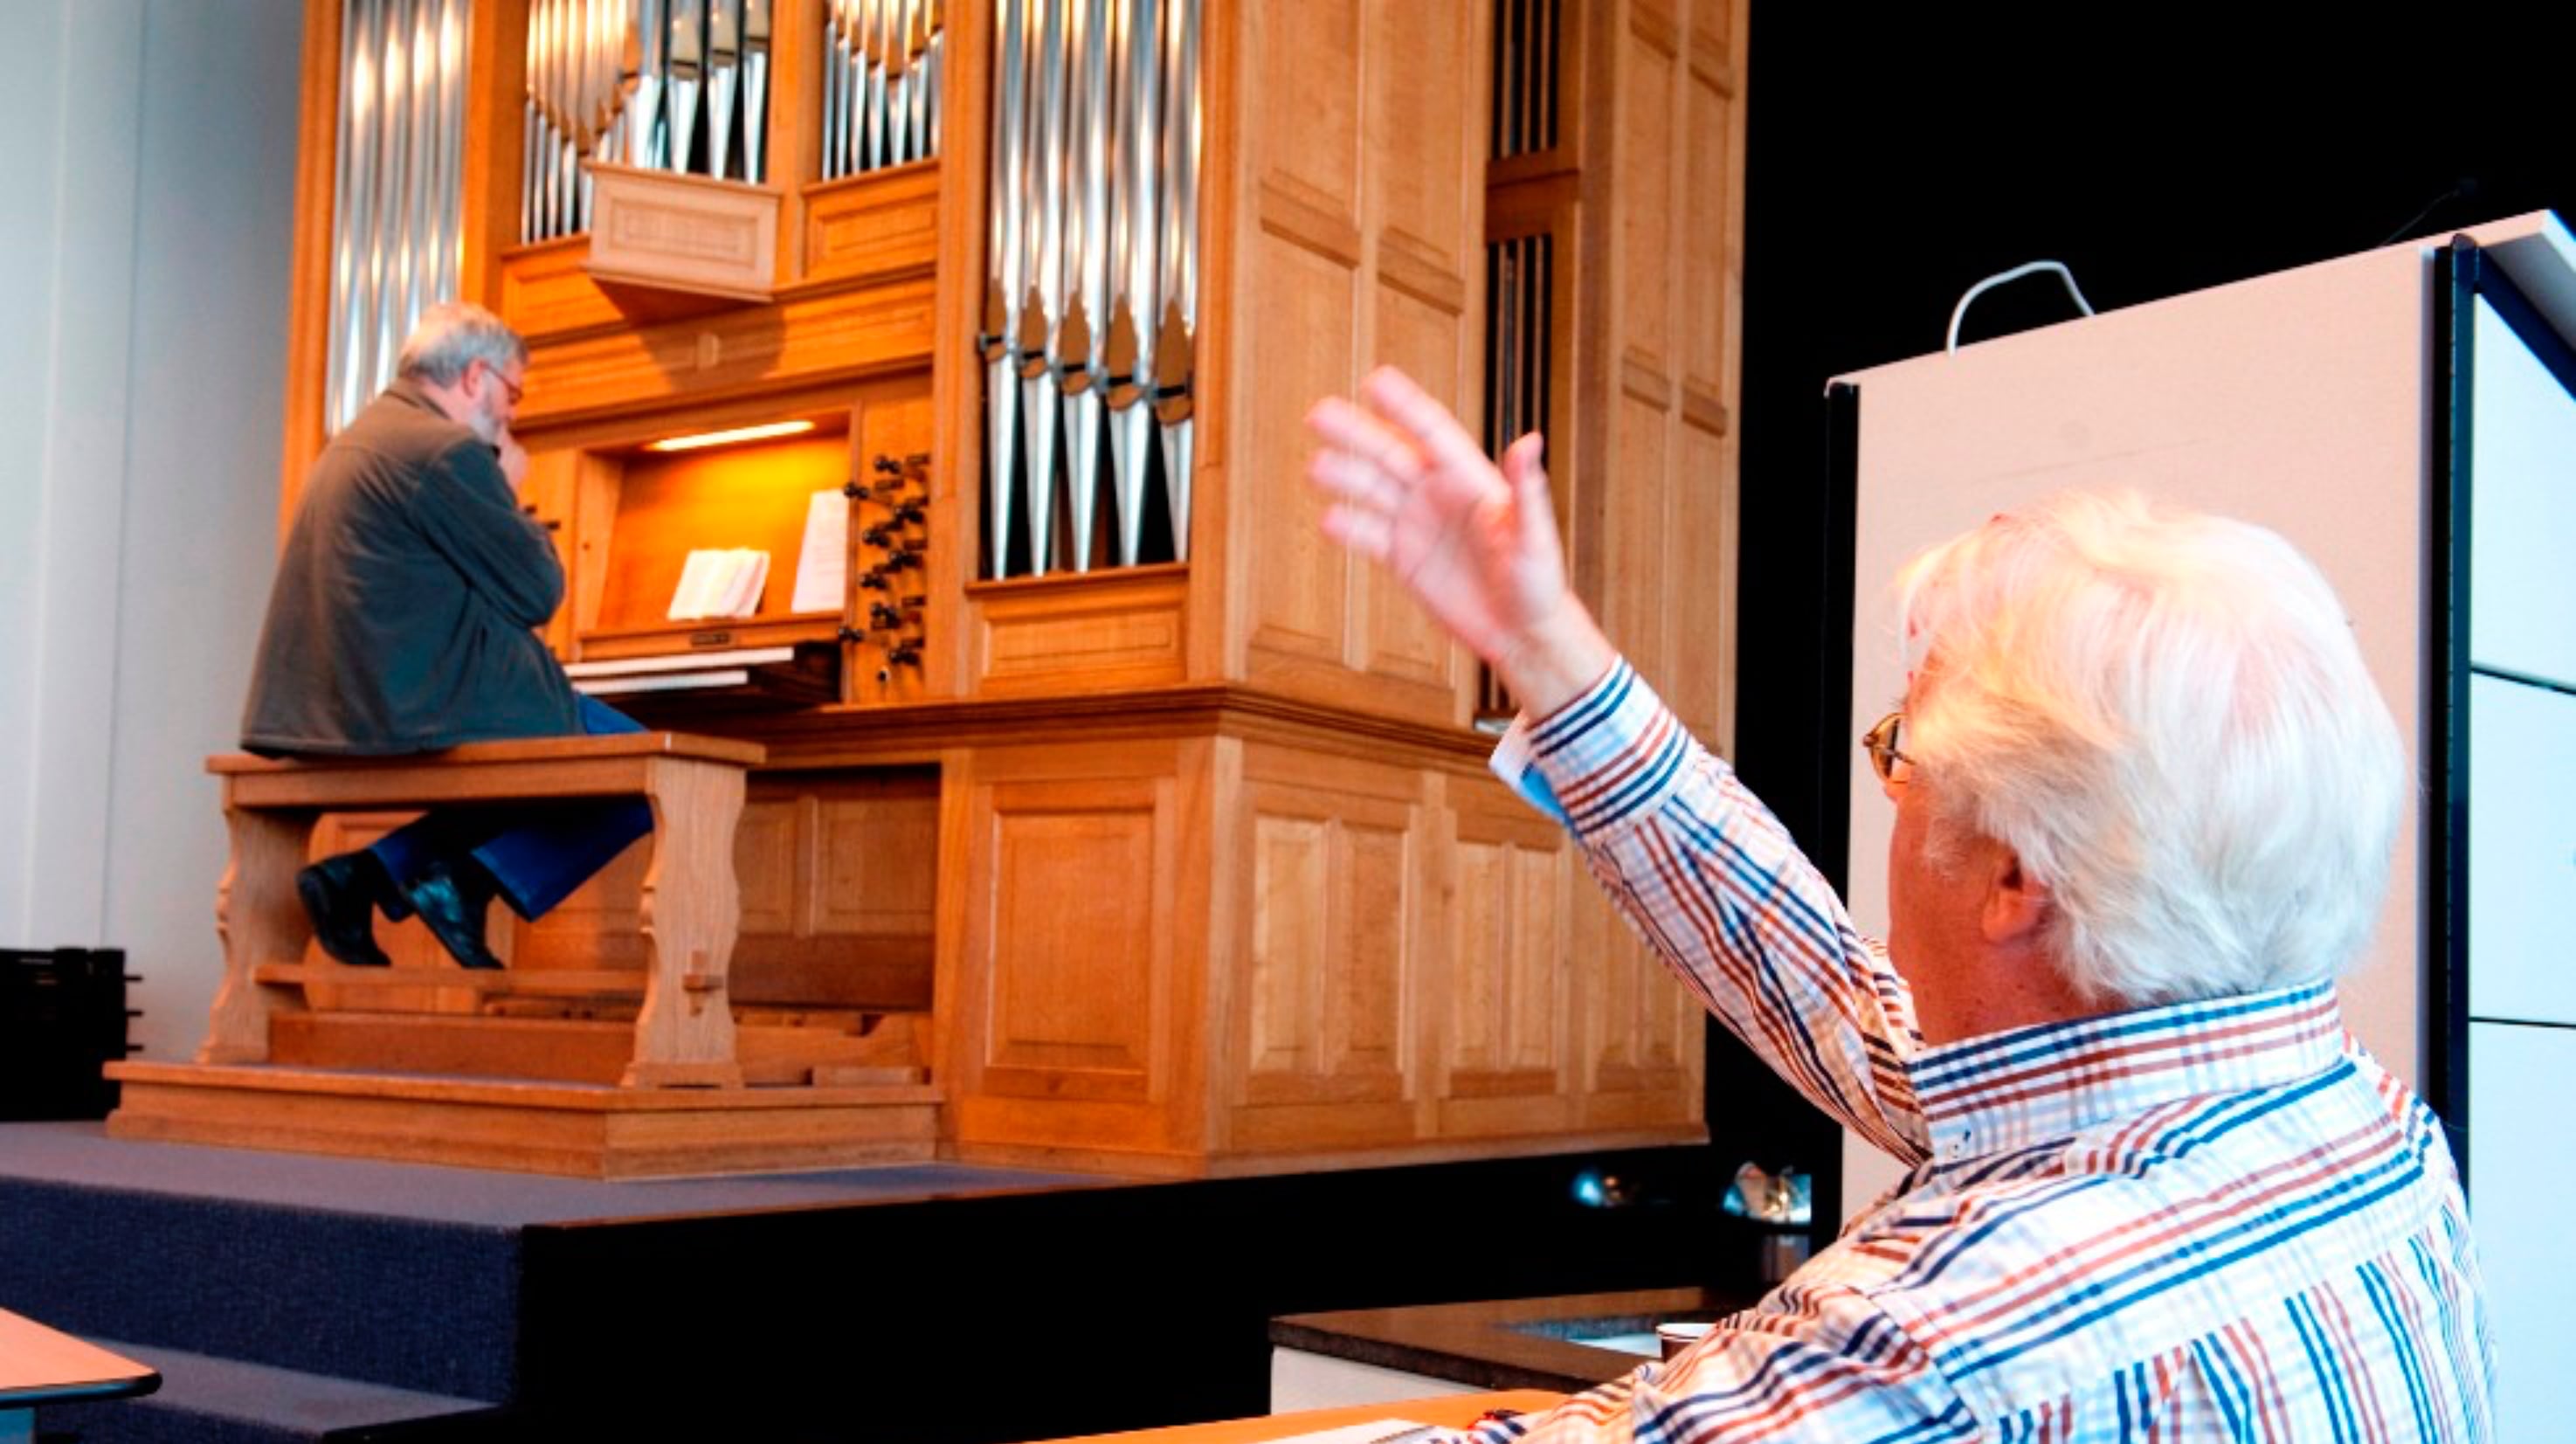 VOGG cursus kerkelijk orgelspel